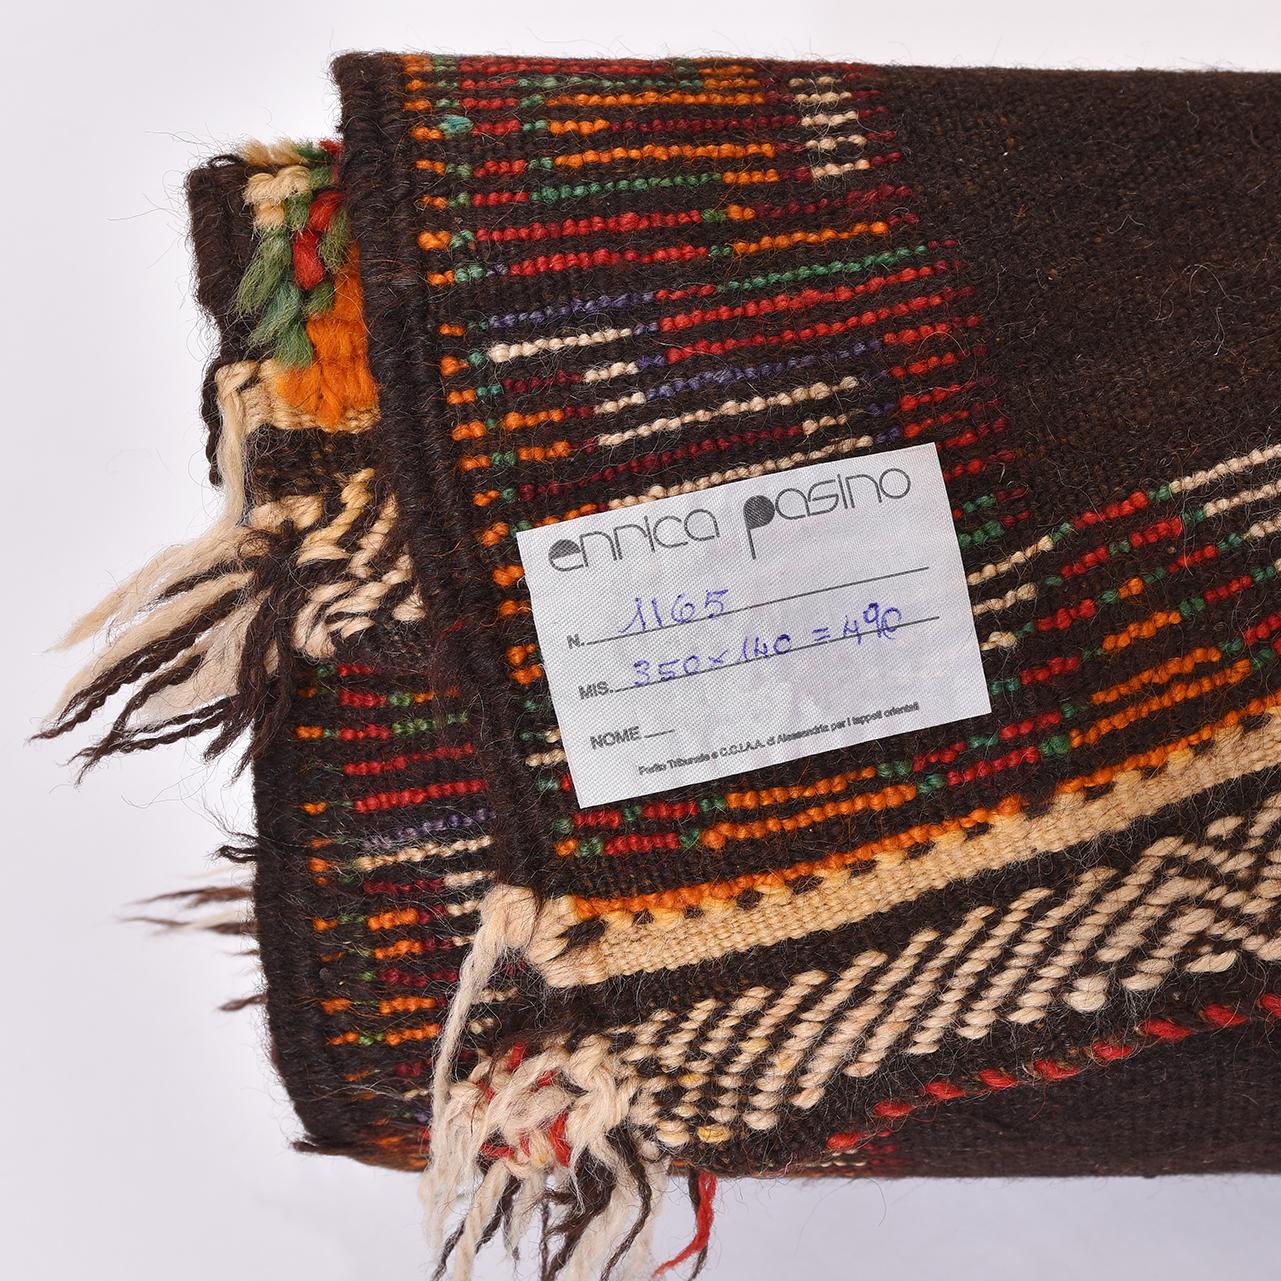 nr. 1165 - Interessantes Exemplar des marokkanischen Teppichs AIT ABDALLAH: warme Farben in geometrischen Mustern auf dunkelbraunem Grund. 
Bordüre und horizontale Streifen in leuchtenden Farben mit Teppichknüpfung.
Ausgezeichneter Teppich, schön